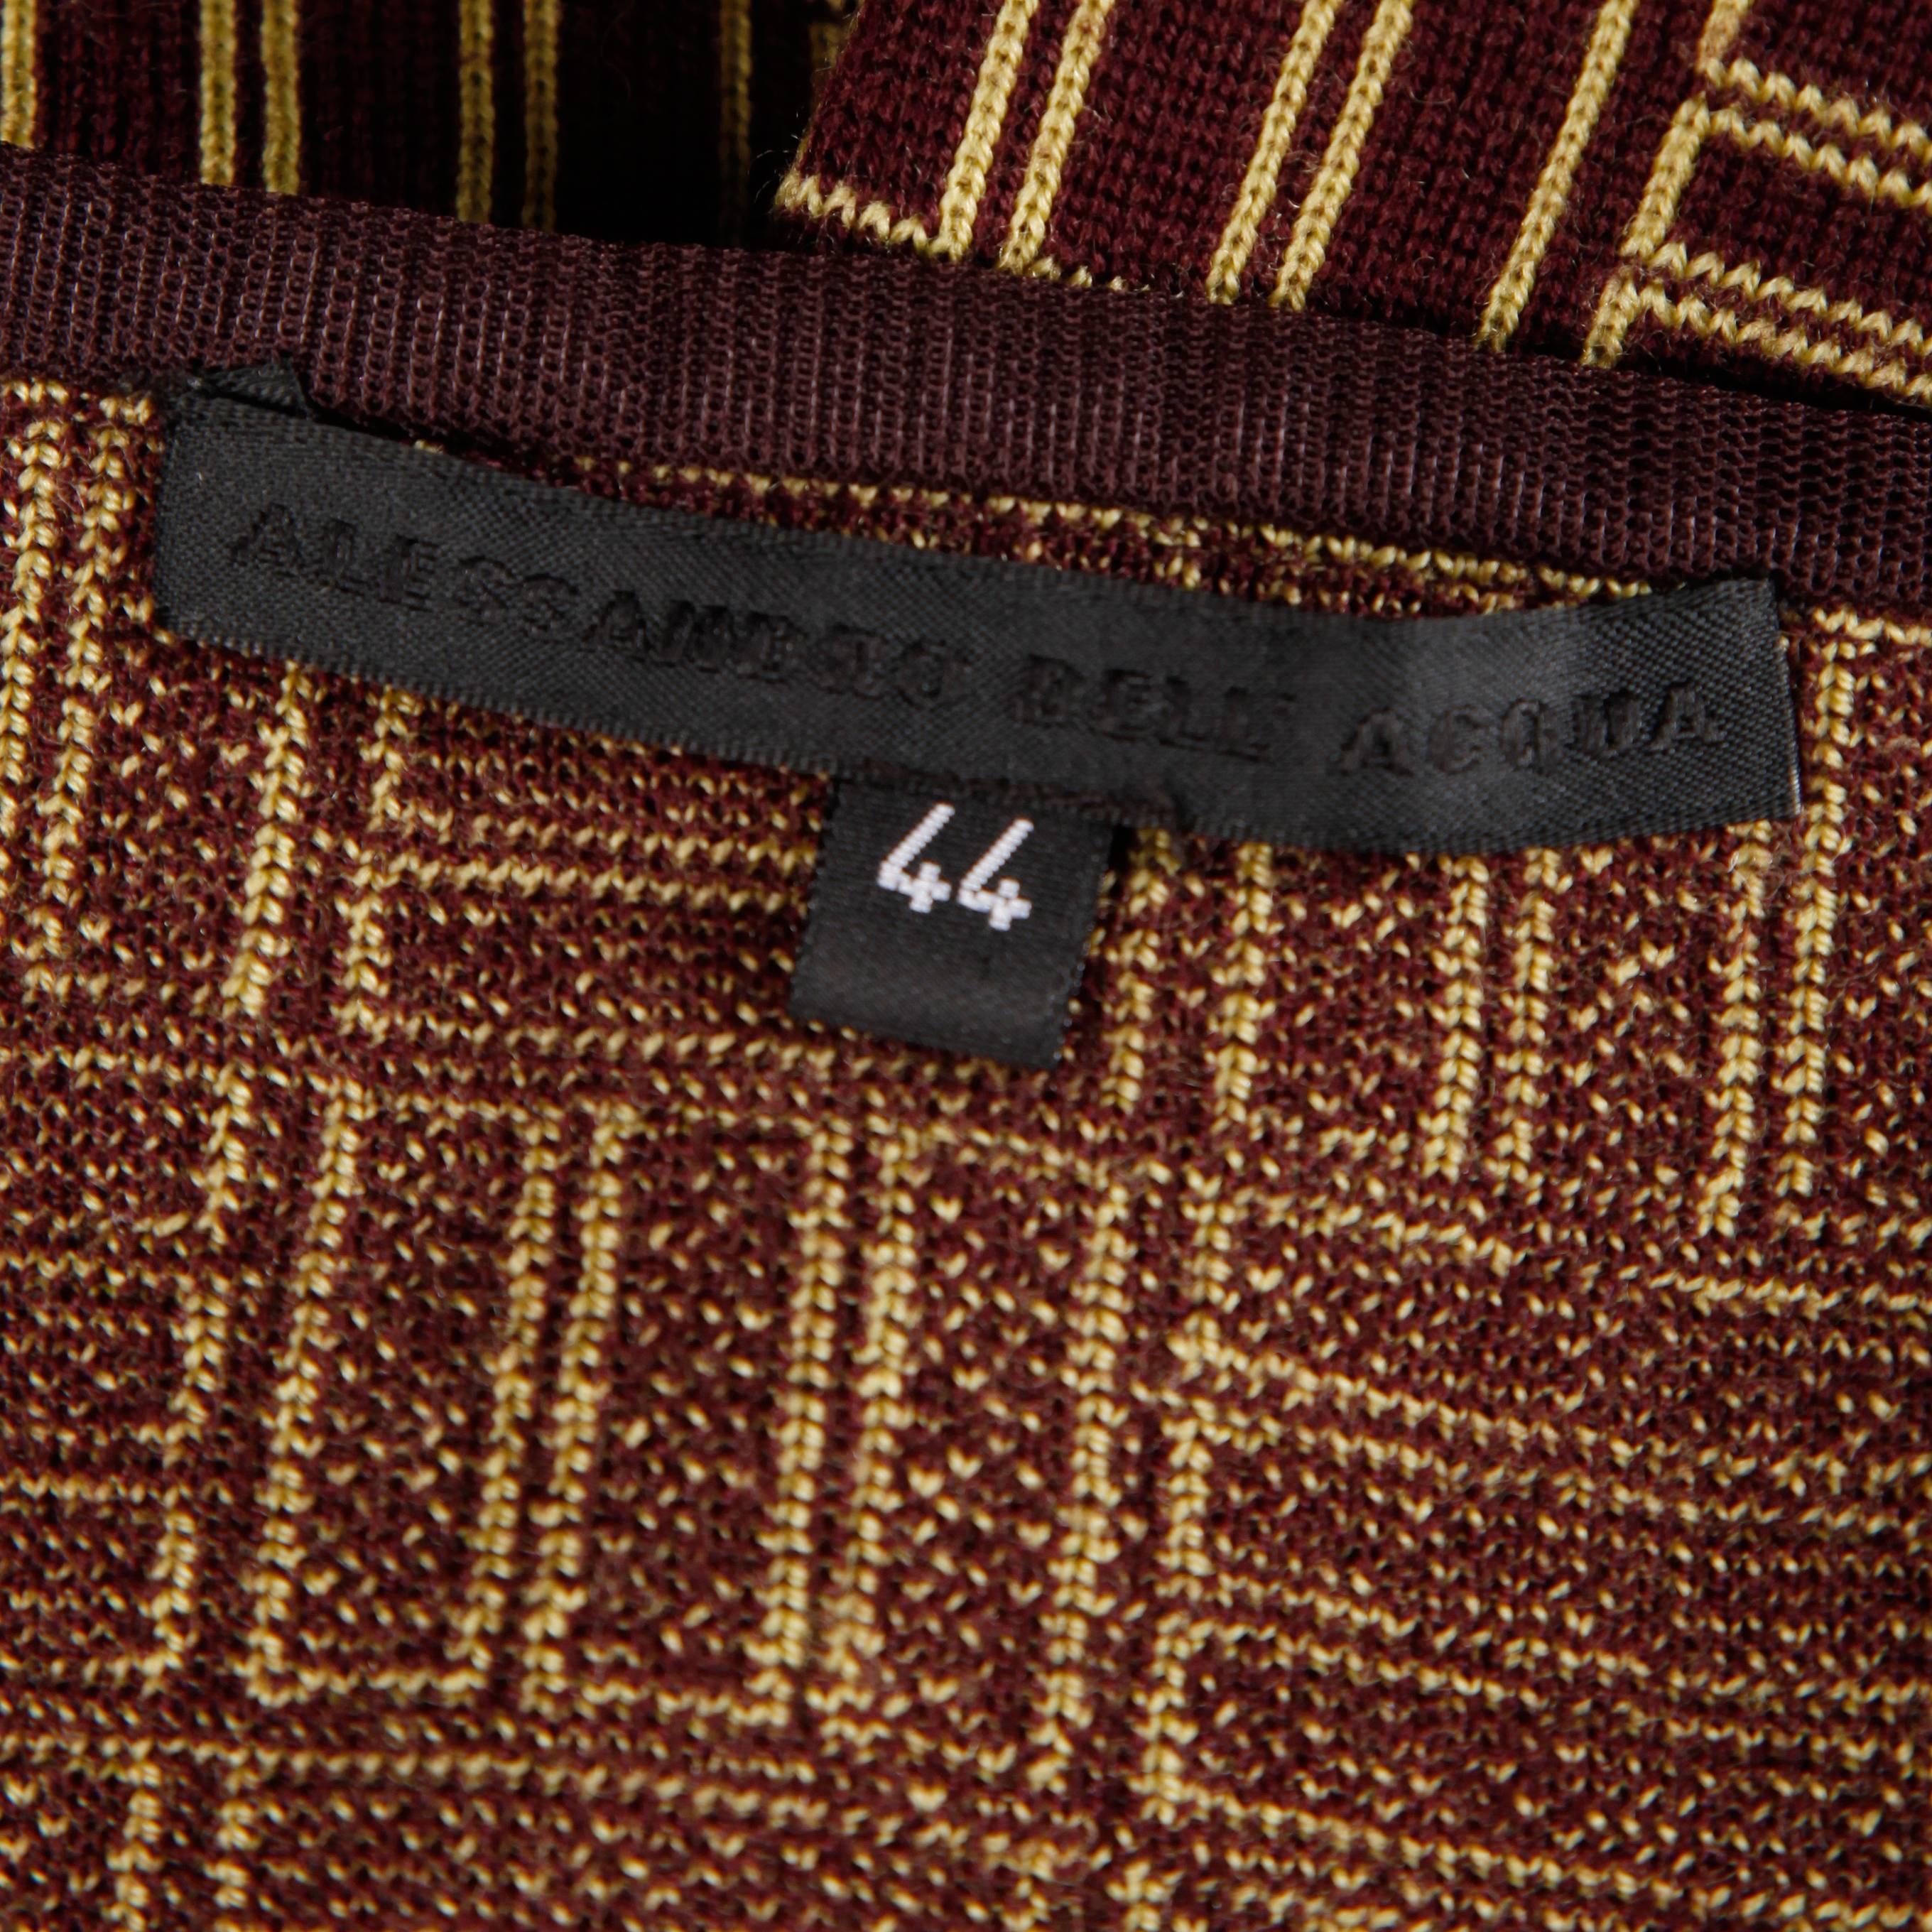 Jupe vintage en tricot géométrique d'Alessandro Dell'Acqua en laine mérinos.

Détails : 

Non doublé
Zip latéral avec fermeture à crochet
Taille marquée : 44
Taille estimée : M-L
Couleur : Marron/ Tan
Tissu : tricot 100% laine